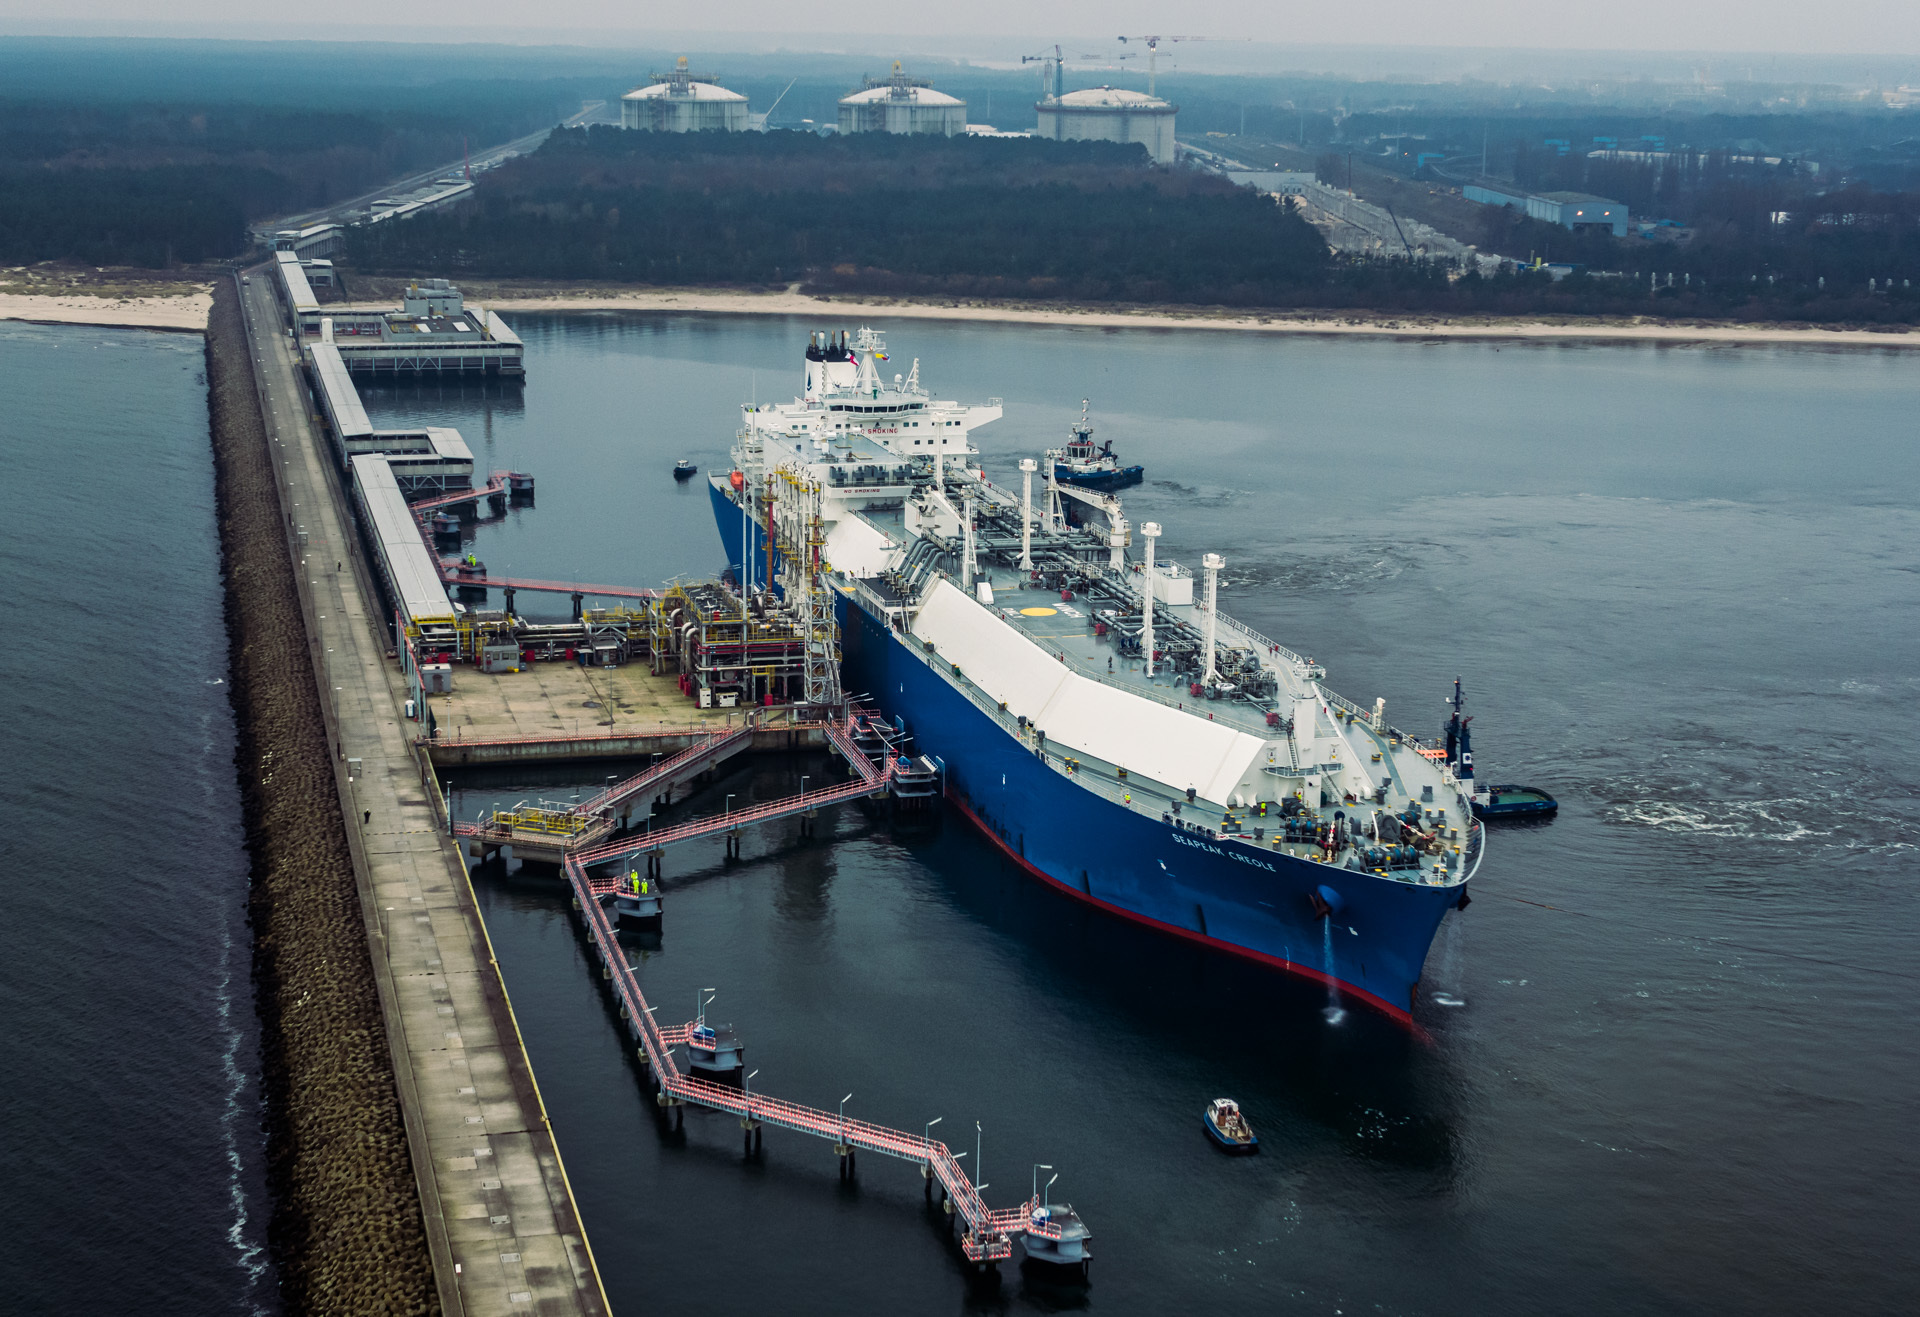 Ten rok będzie rekordowy dla terminalu gazu skroplonego w Świnoujściu - poinformował prezes Zarządu Morskich Portów Szczecin i Świnoujście Krzysztof Urbaś. Terminal jest najbardziej zajętym terminalem w Europie.